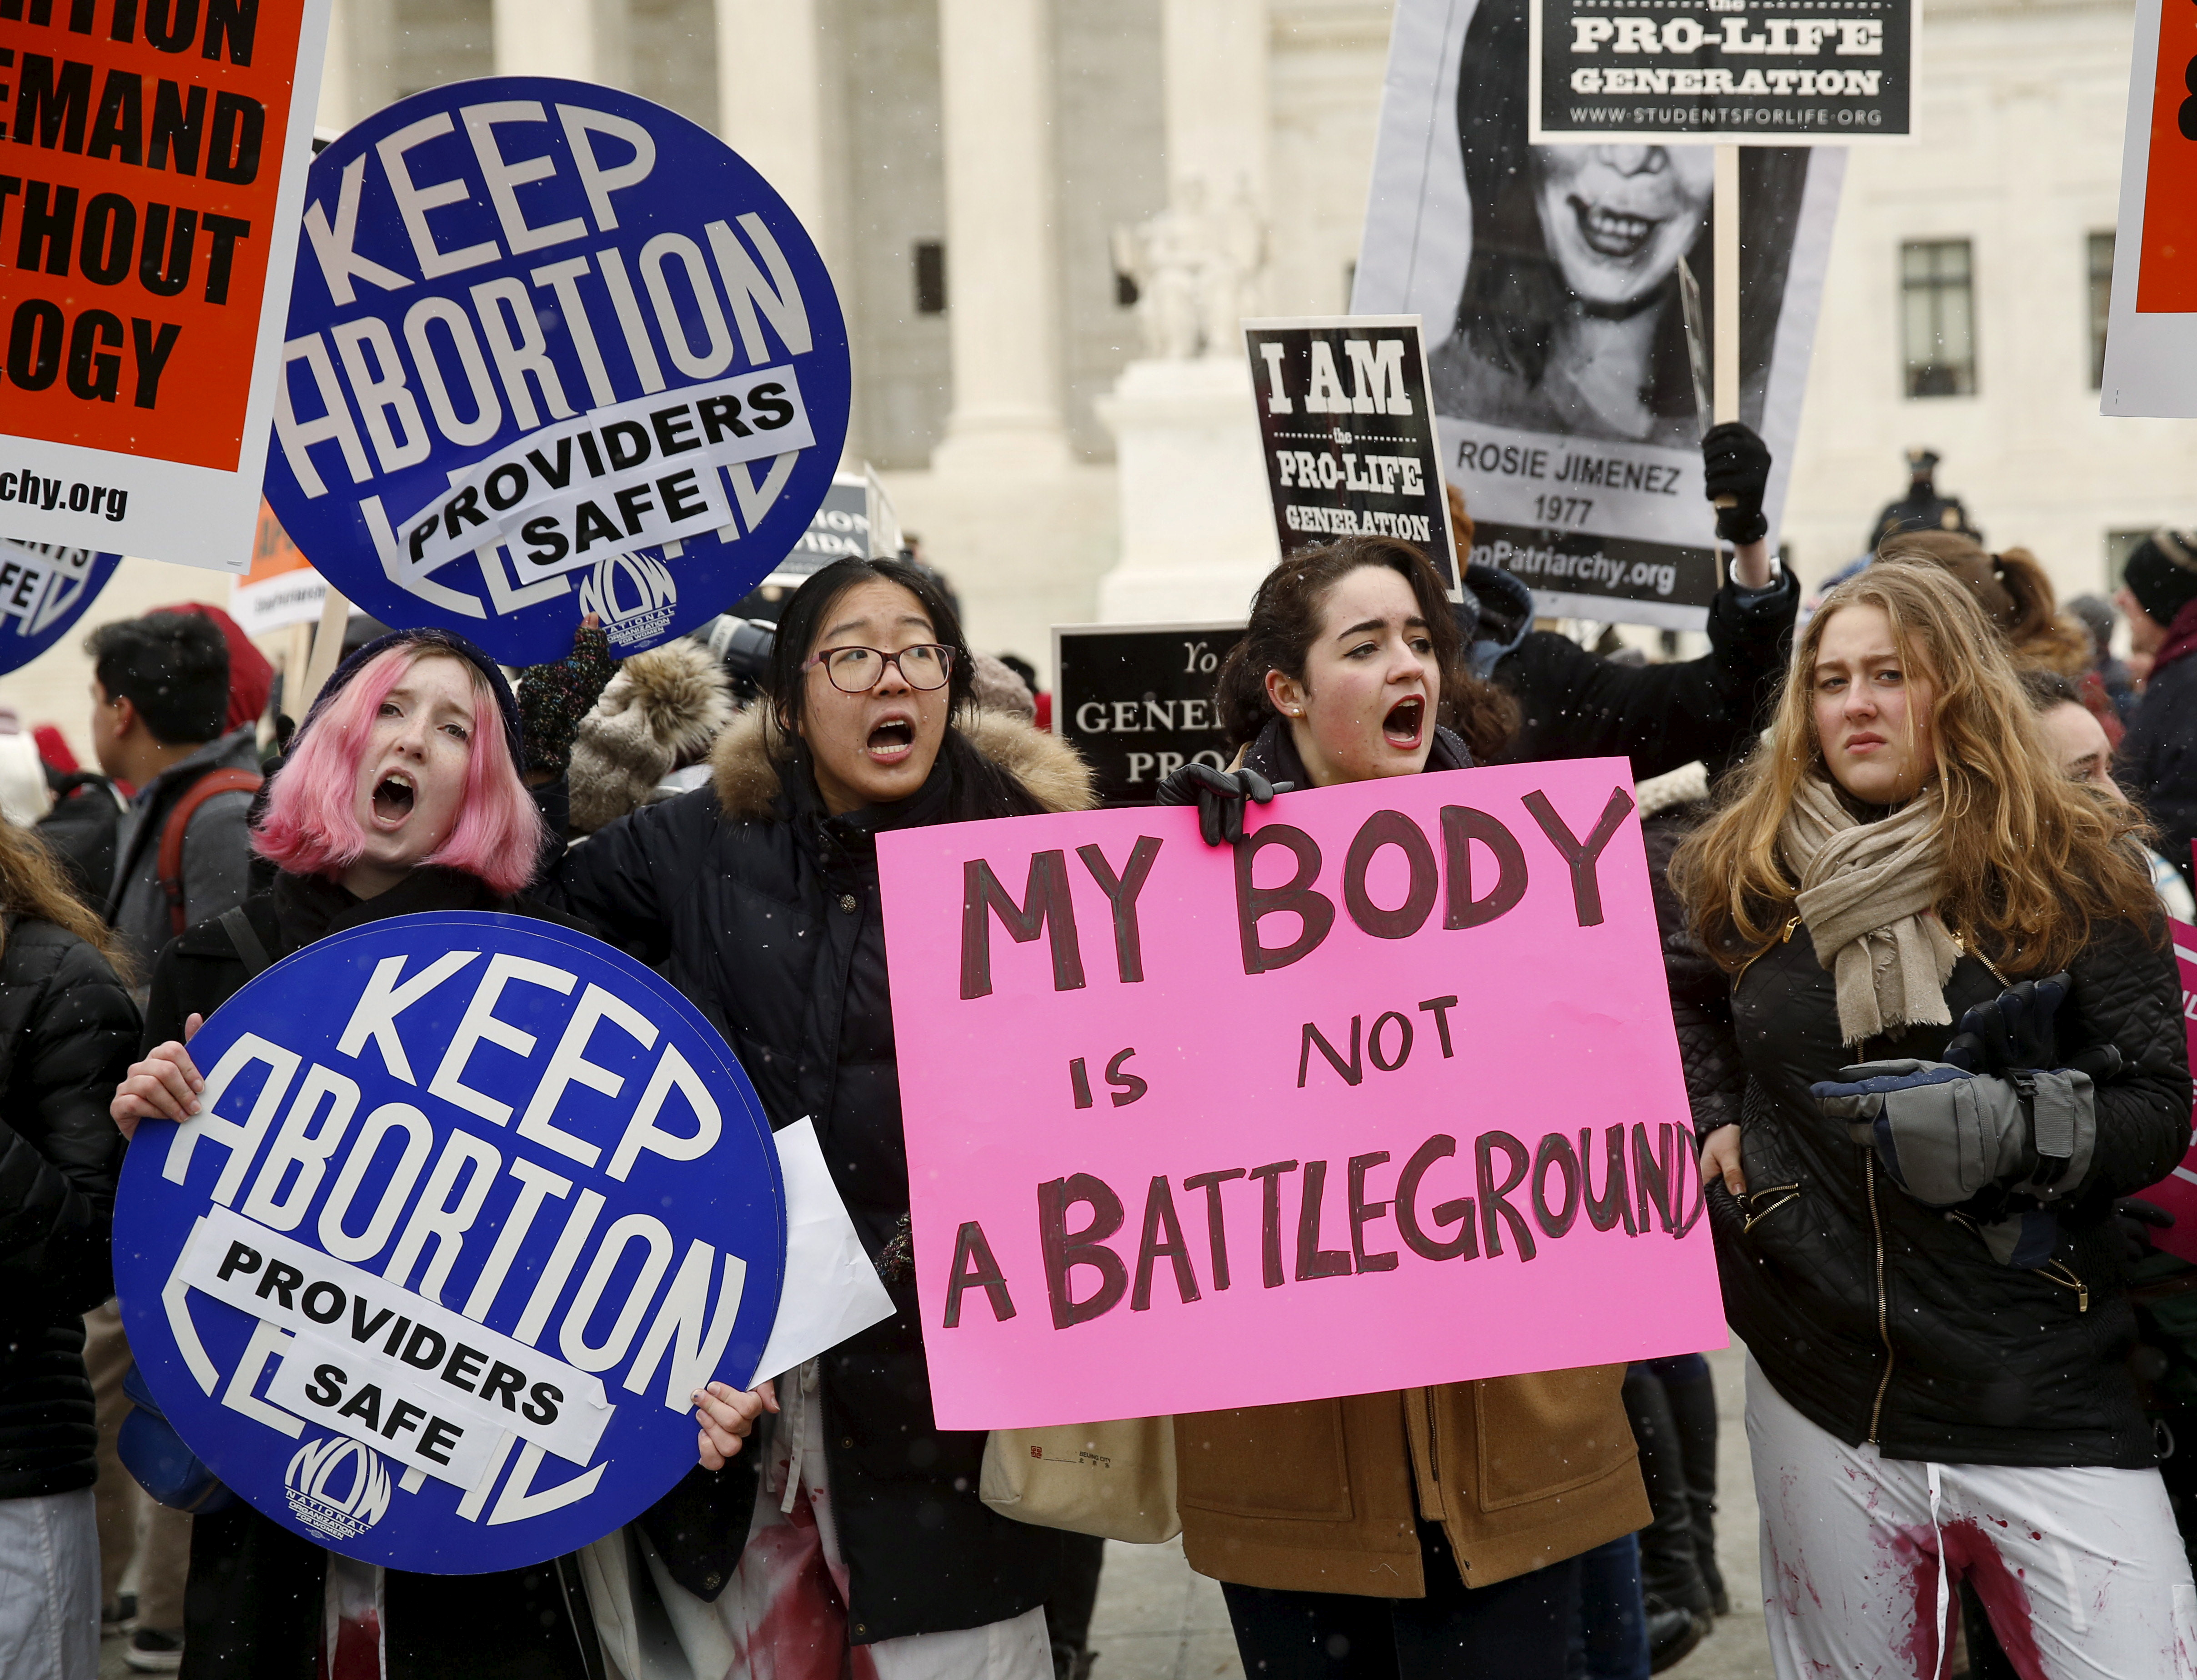 Las manifestaciones a favor y en contra del acceso al aborto no han cesado en los Estados Unidos (REUTERS/Gary Cameron)